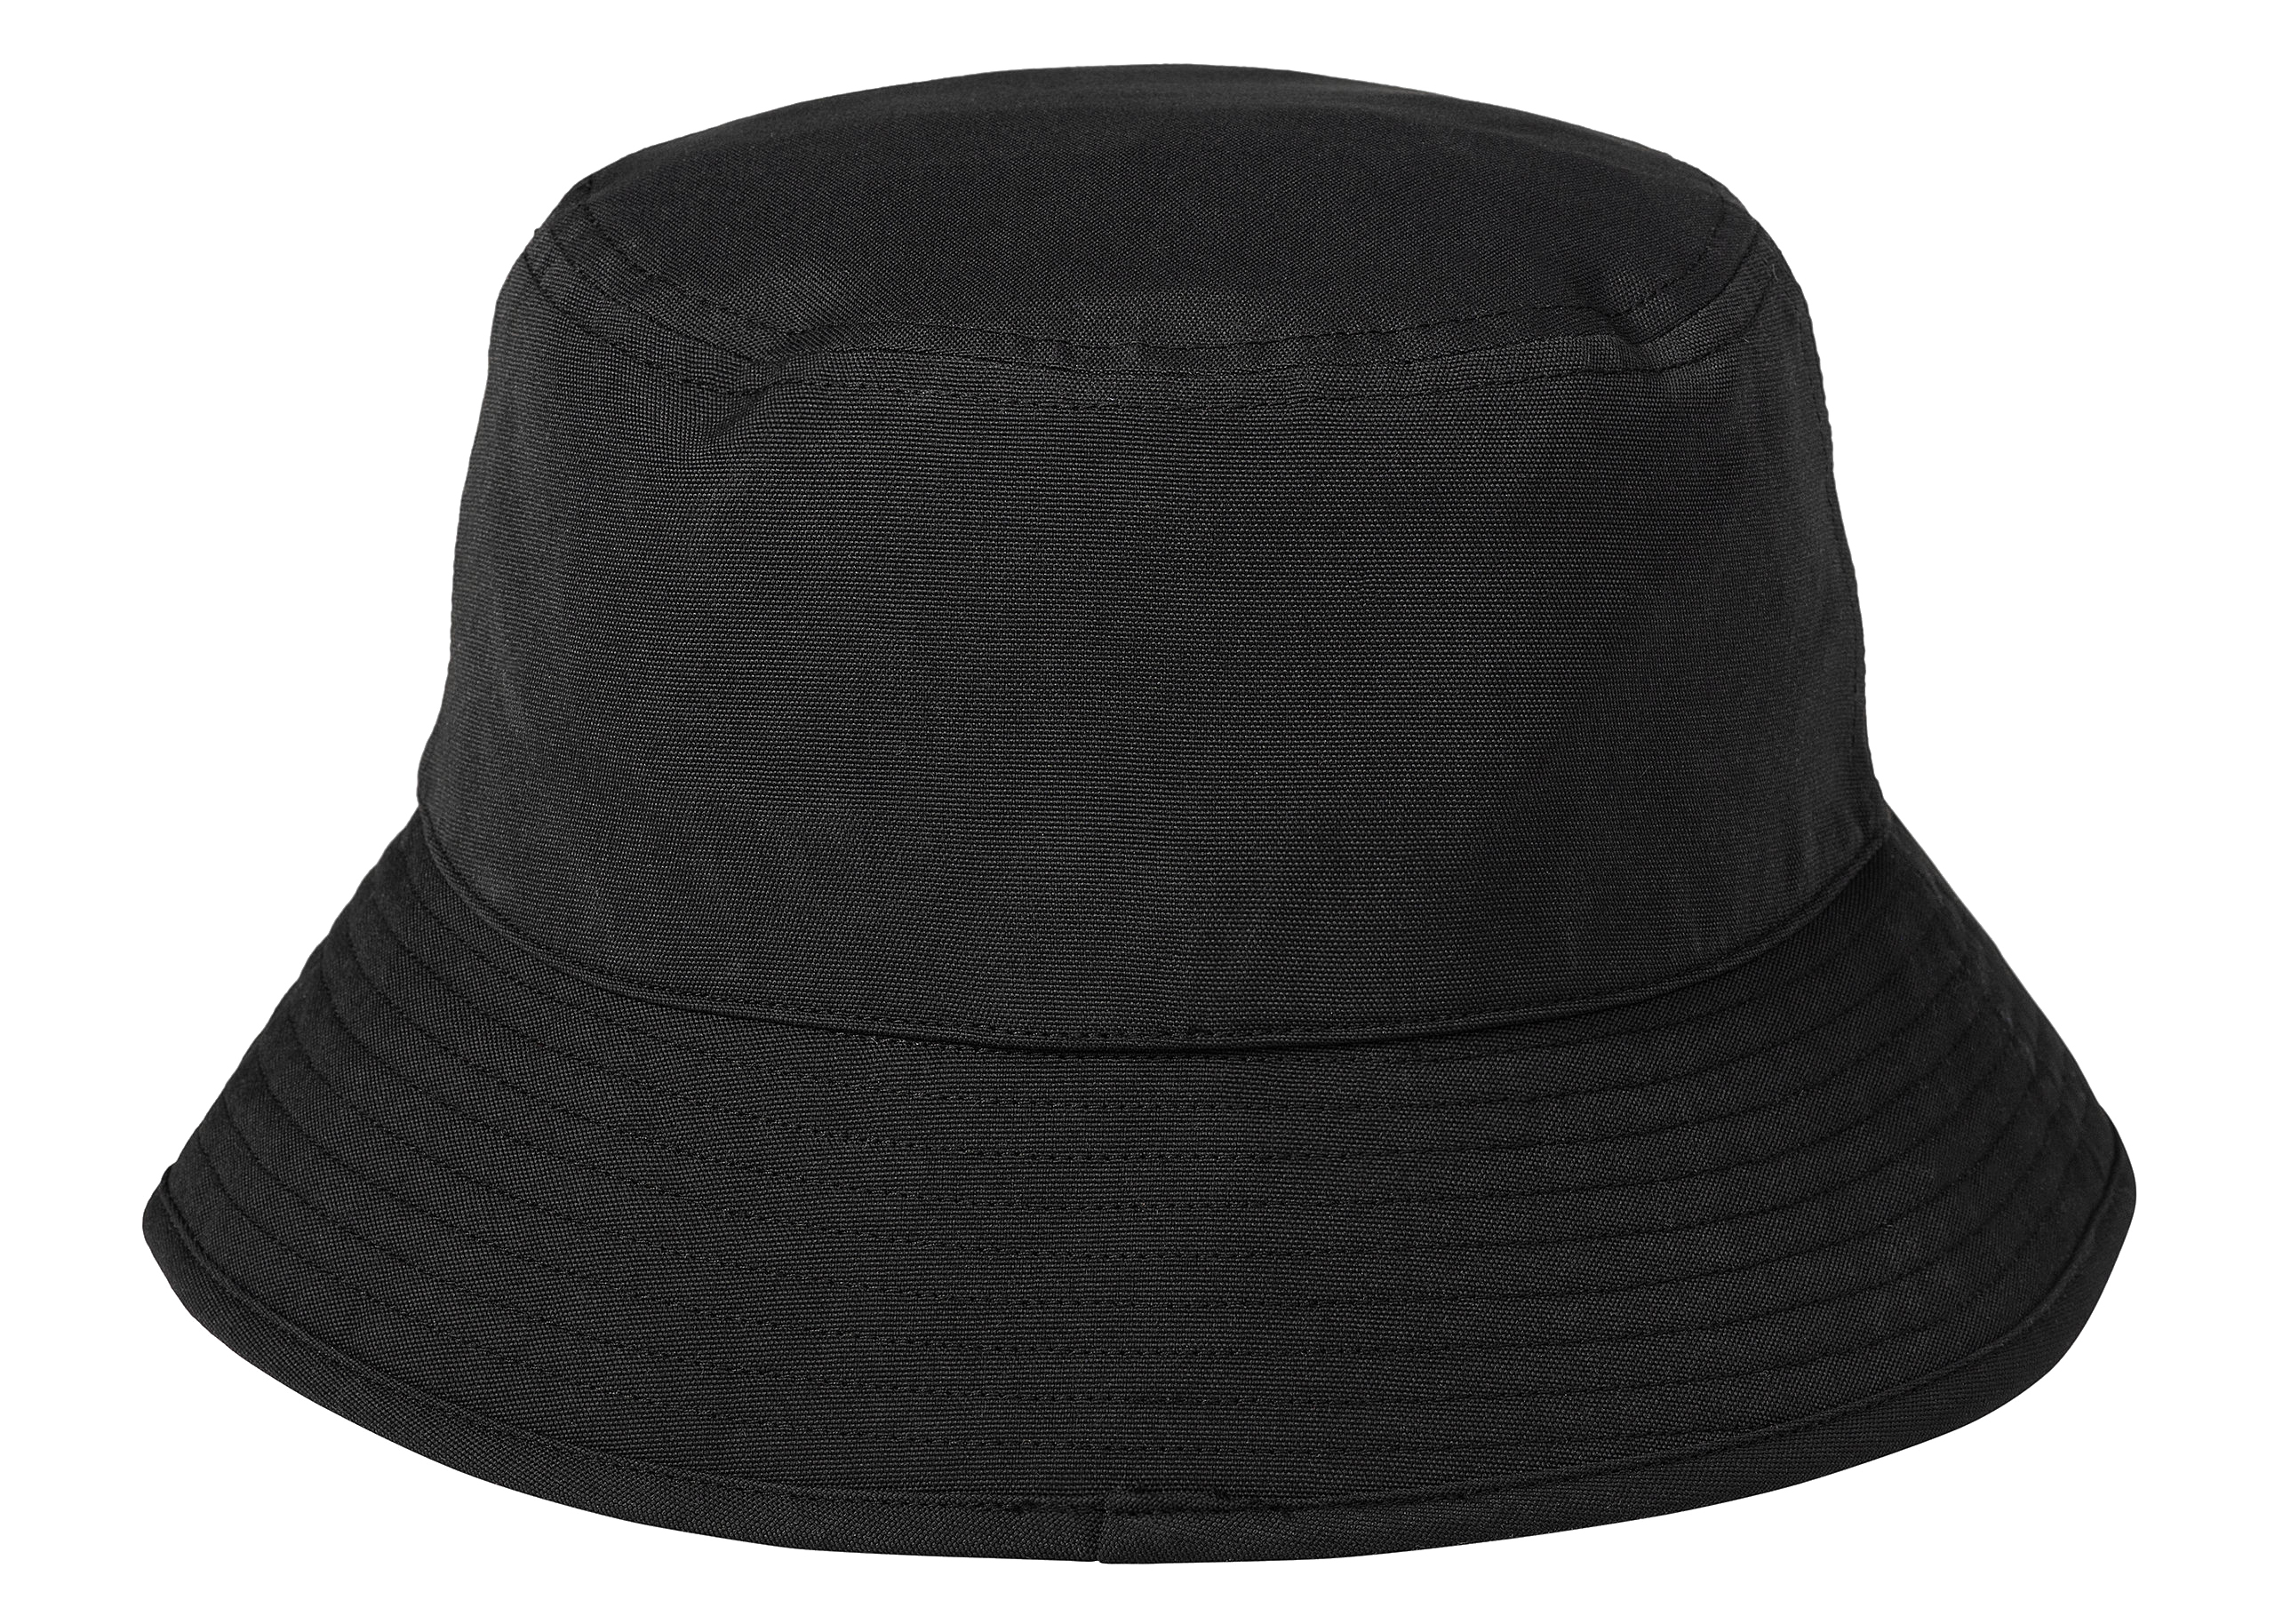 Carhartt WIP x Invincible Bucket Hat Black